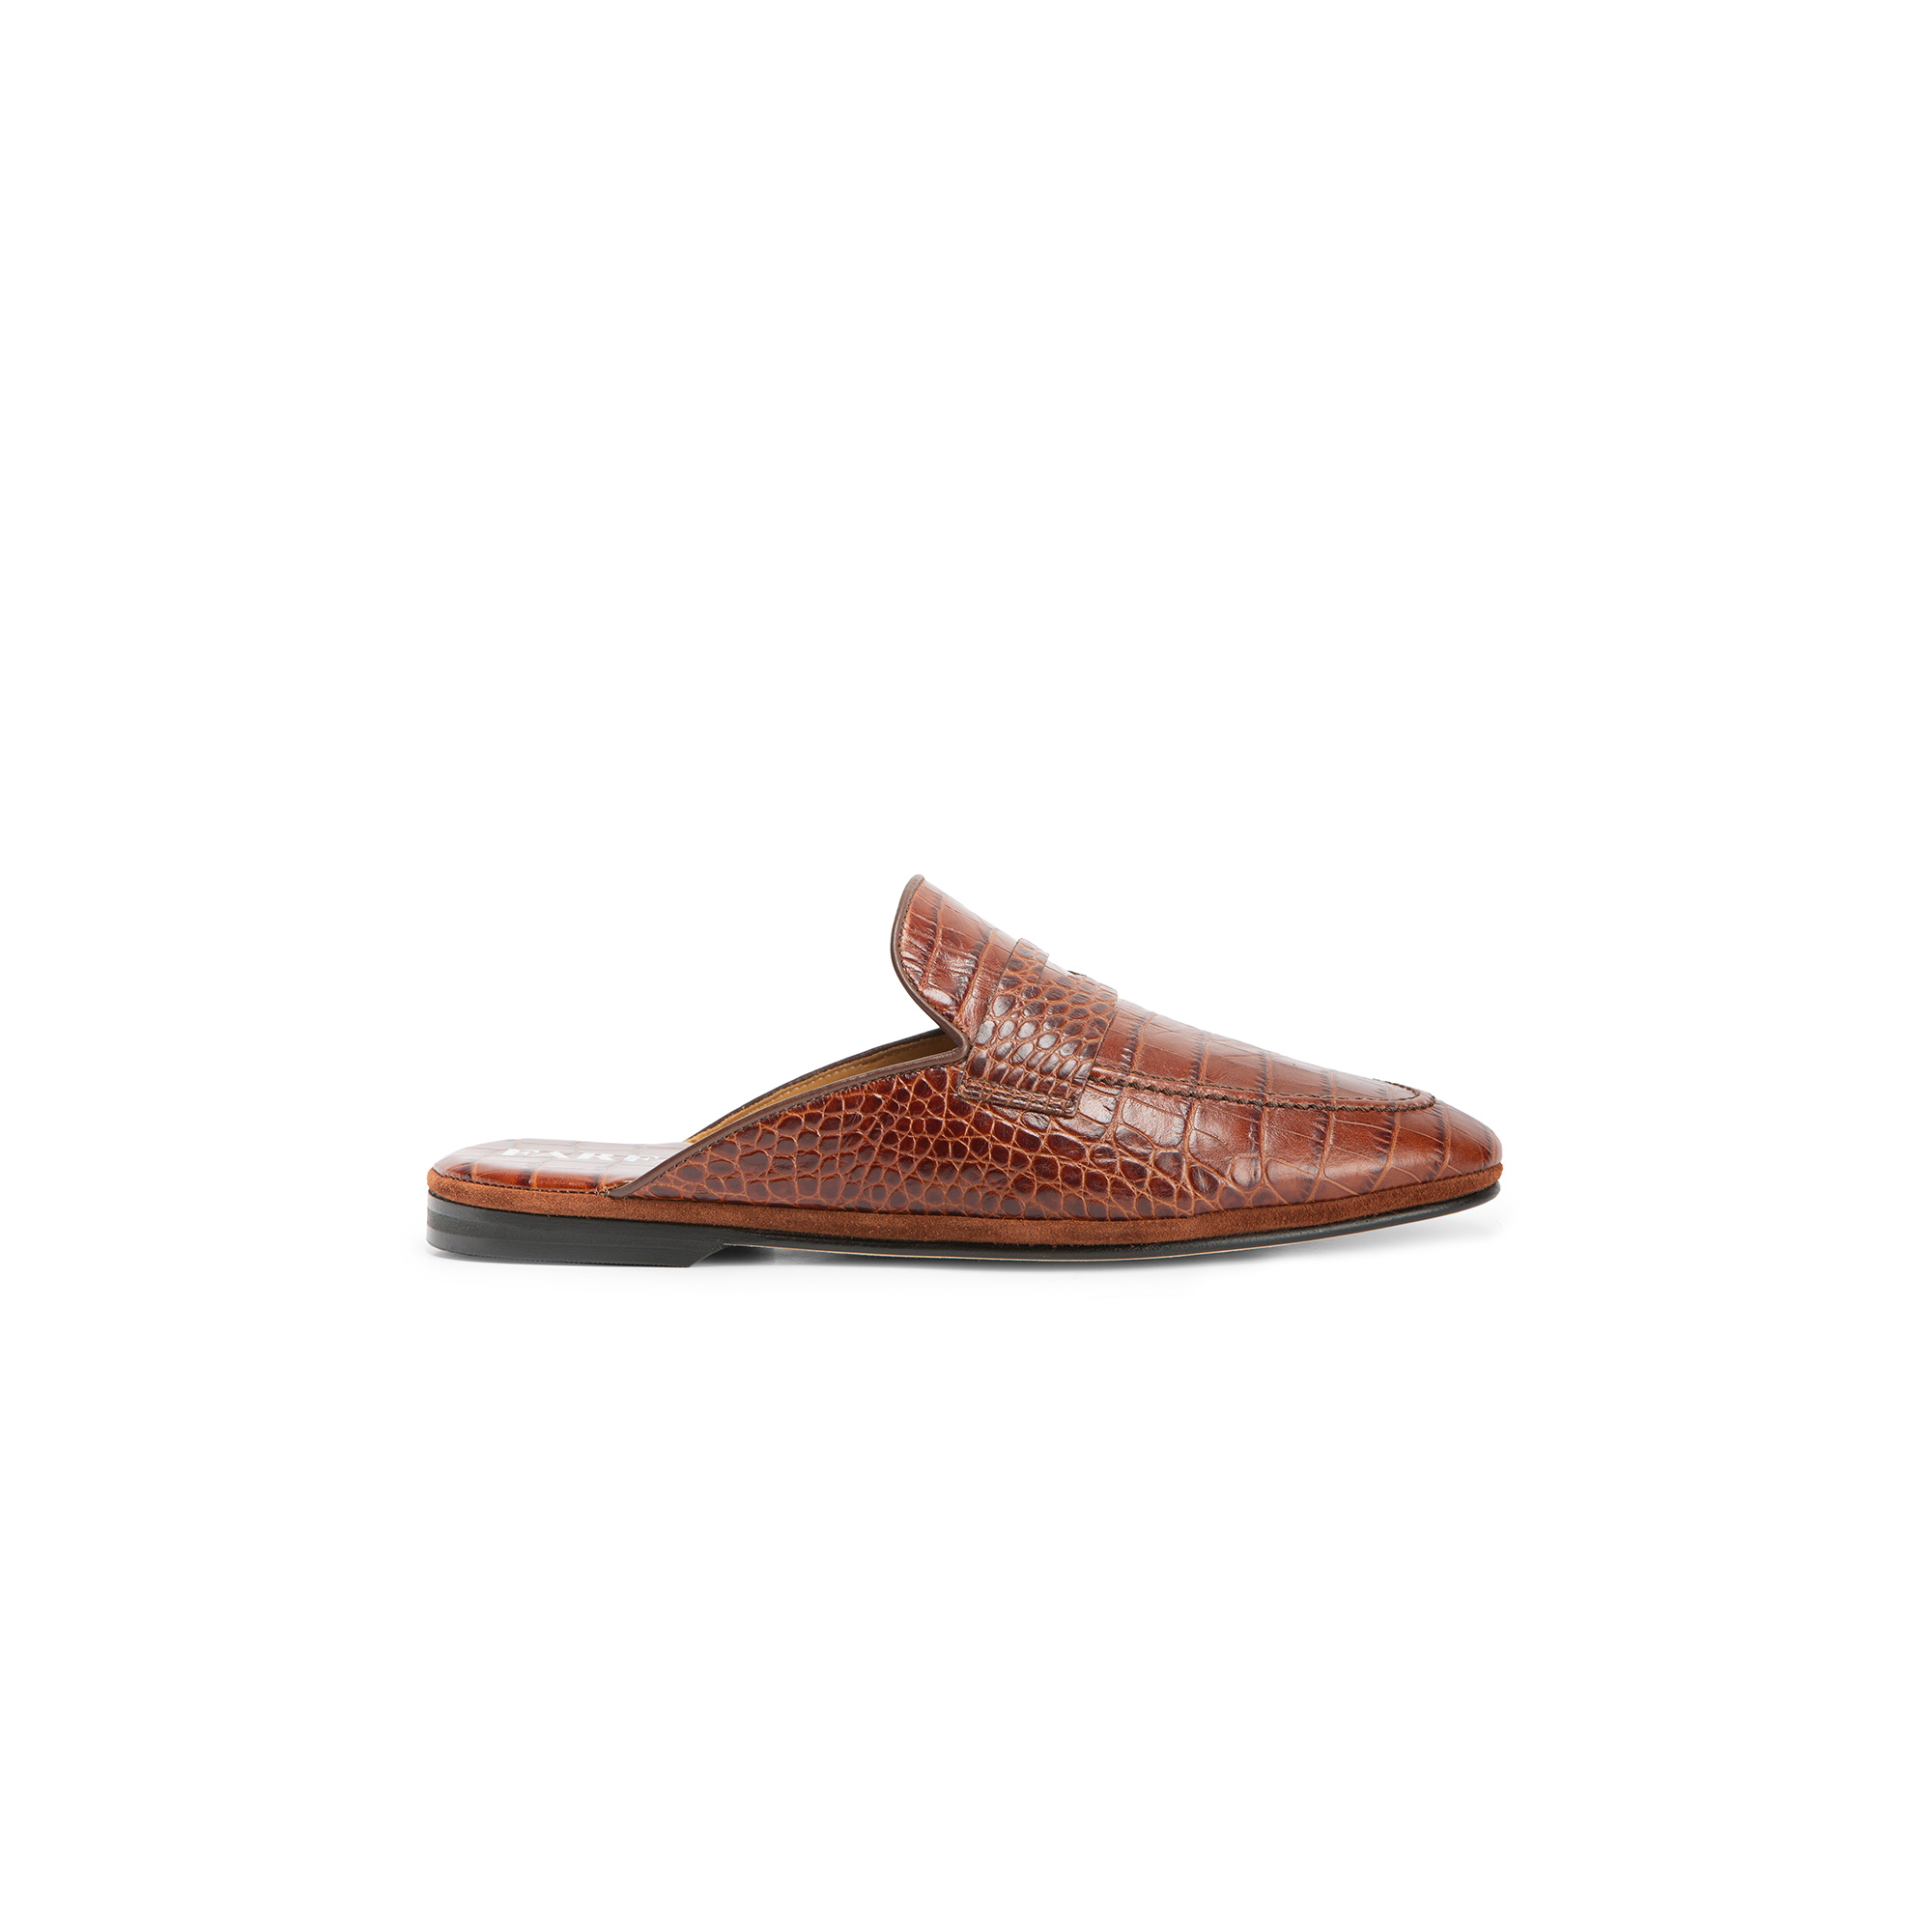 Pantofola esterno aperta pelle stampato cocco marrone - Farfalla italian slippers